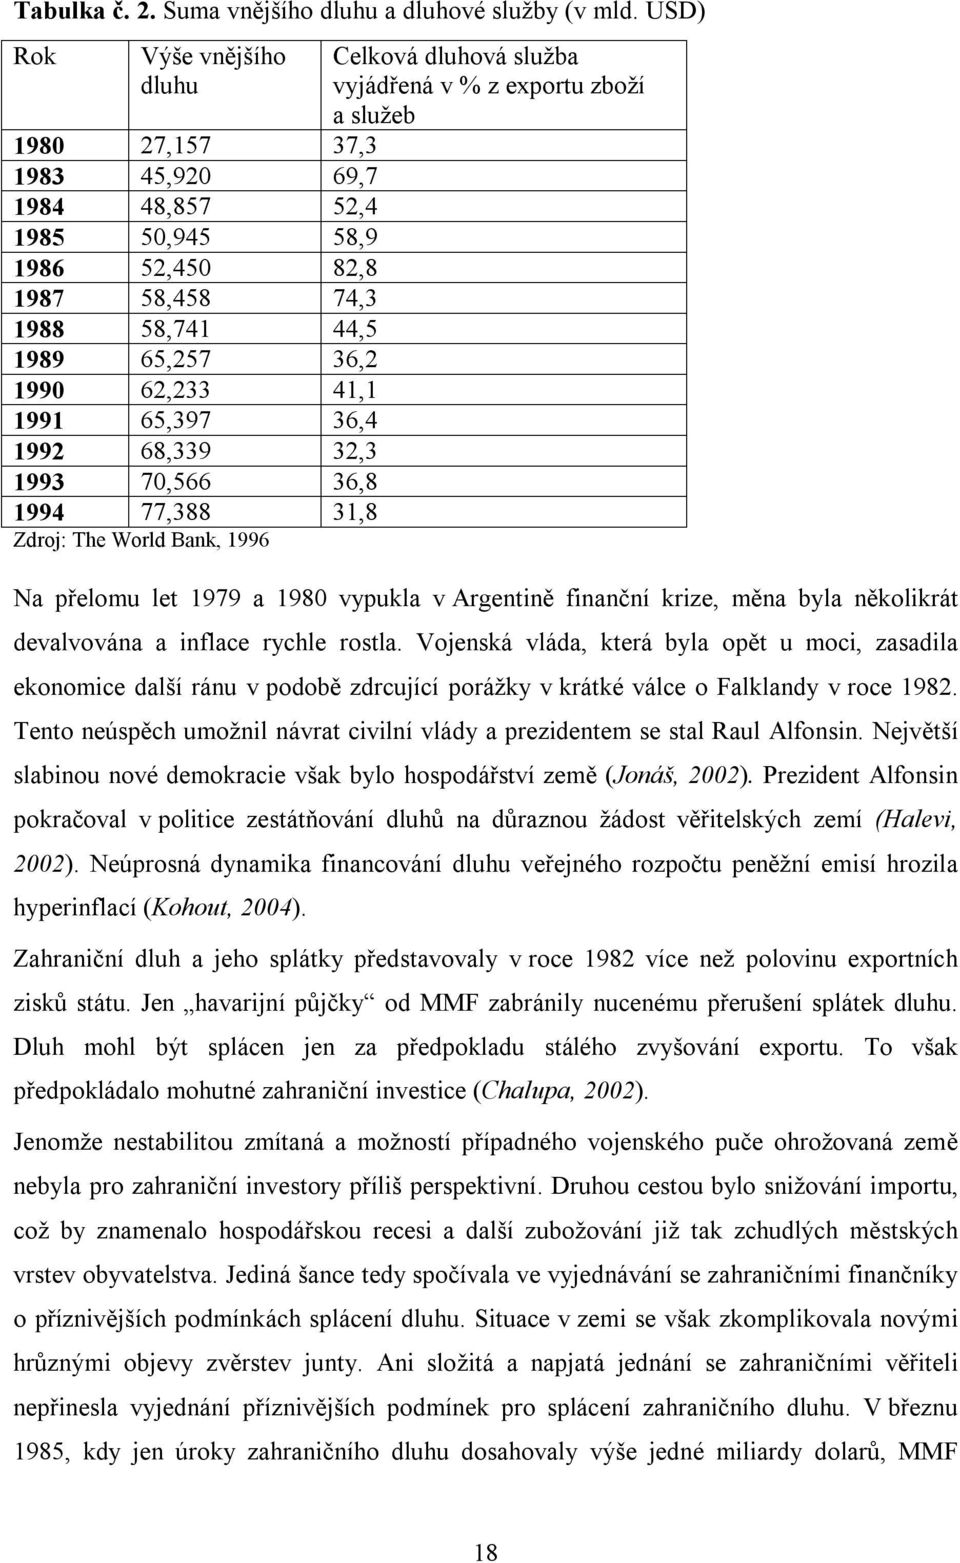 1992 68,339 32,3 1993 70,566 36,8 1994 77,388 31,8 Zdroj: The World Bank, 1996 Celková dluhová služba vyjádřená v % z exportu zboží a služeb Na přelomu let 1979 a 1980 vypukla v Argentině finanční